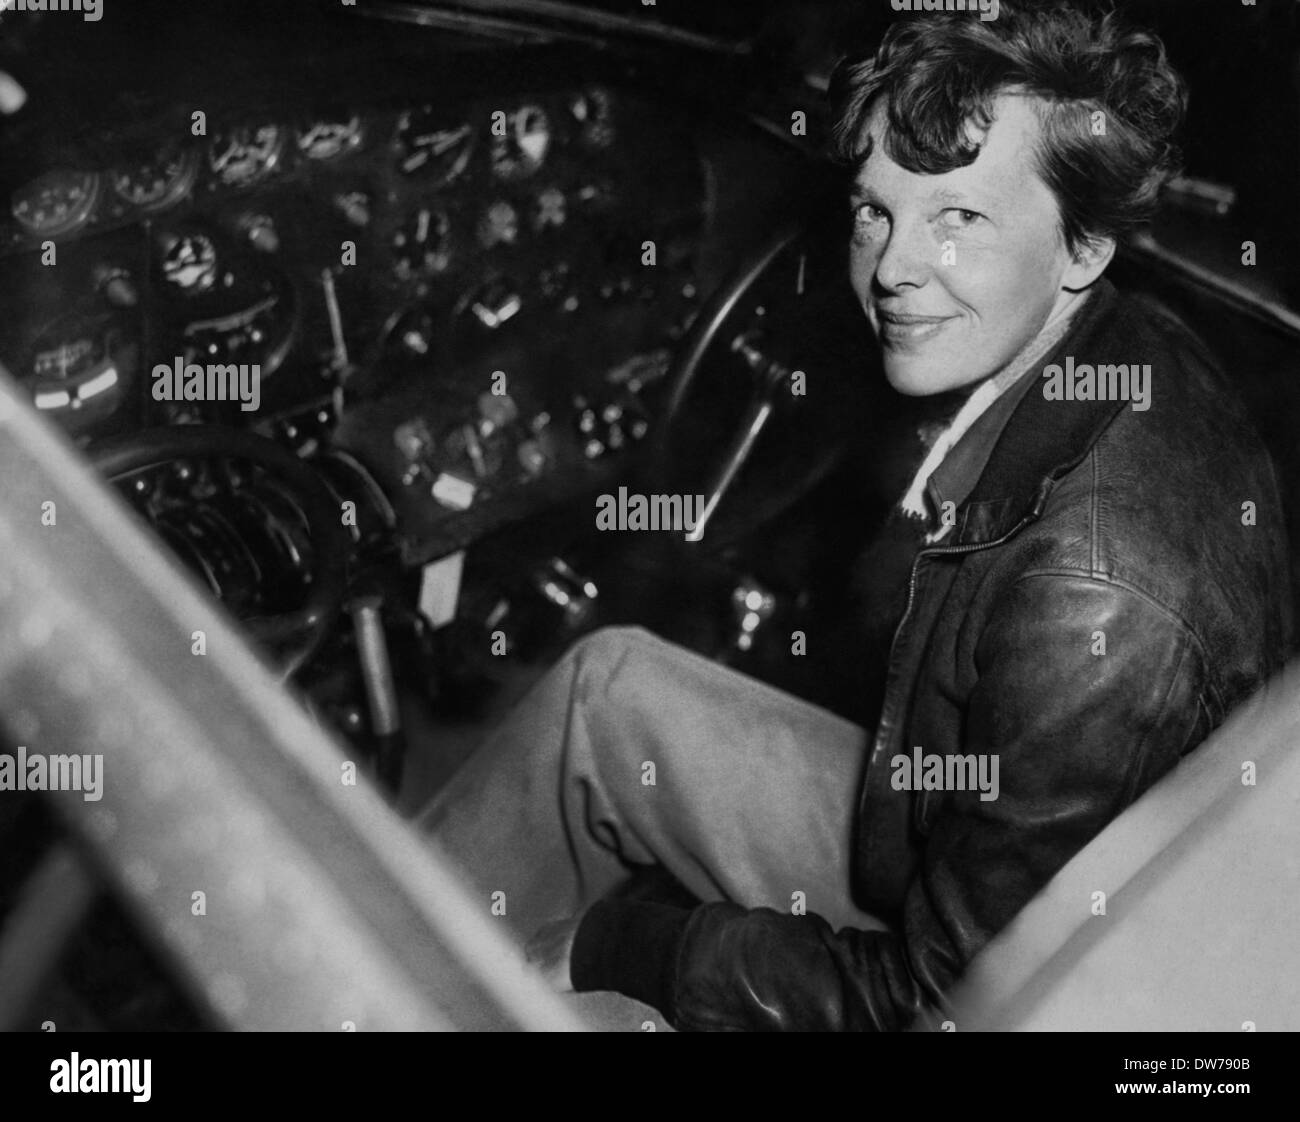 Pionnier de l'aviation Amelia Earhart pose assis dans le cockpit d'un avion Electra le 15 décembre 1937. Amelia Earhart est la première femme aviateur de voler en solo à travers l'Océan Atlantique Banque D'Images